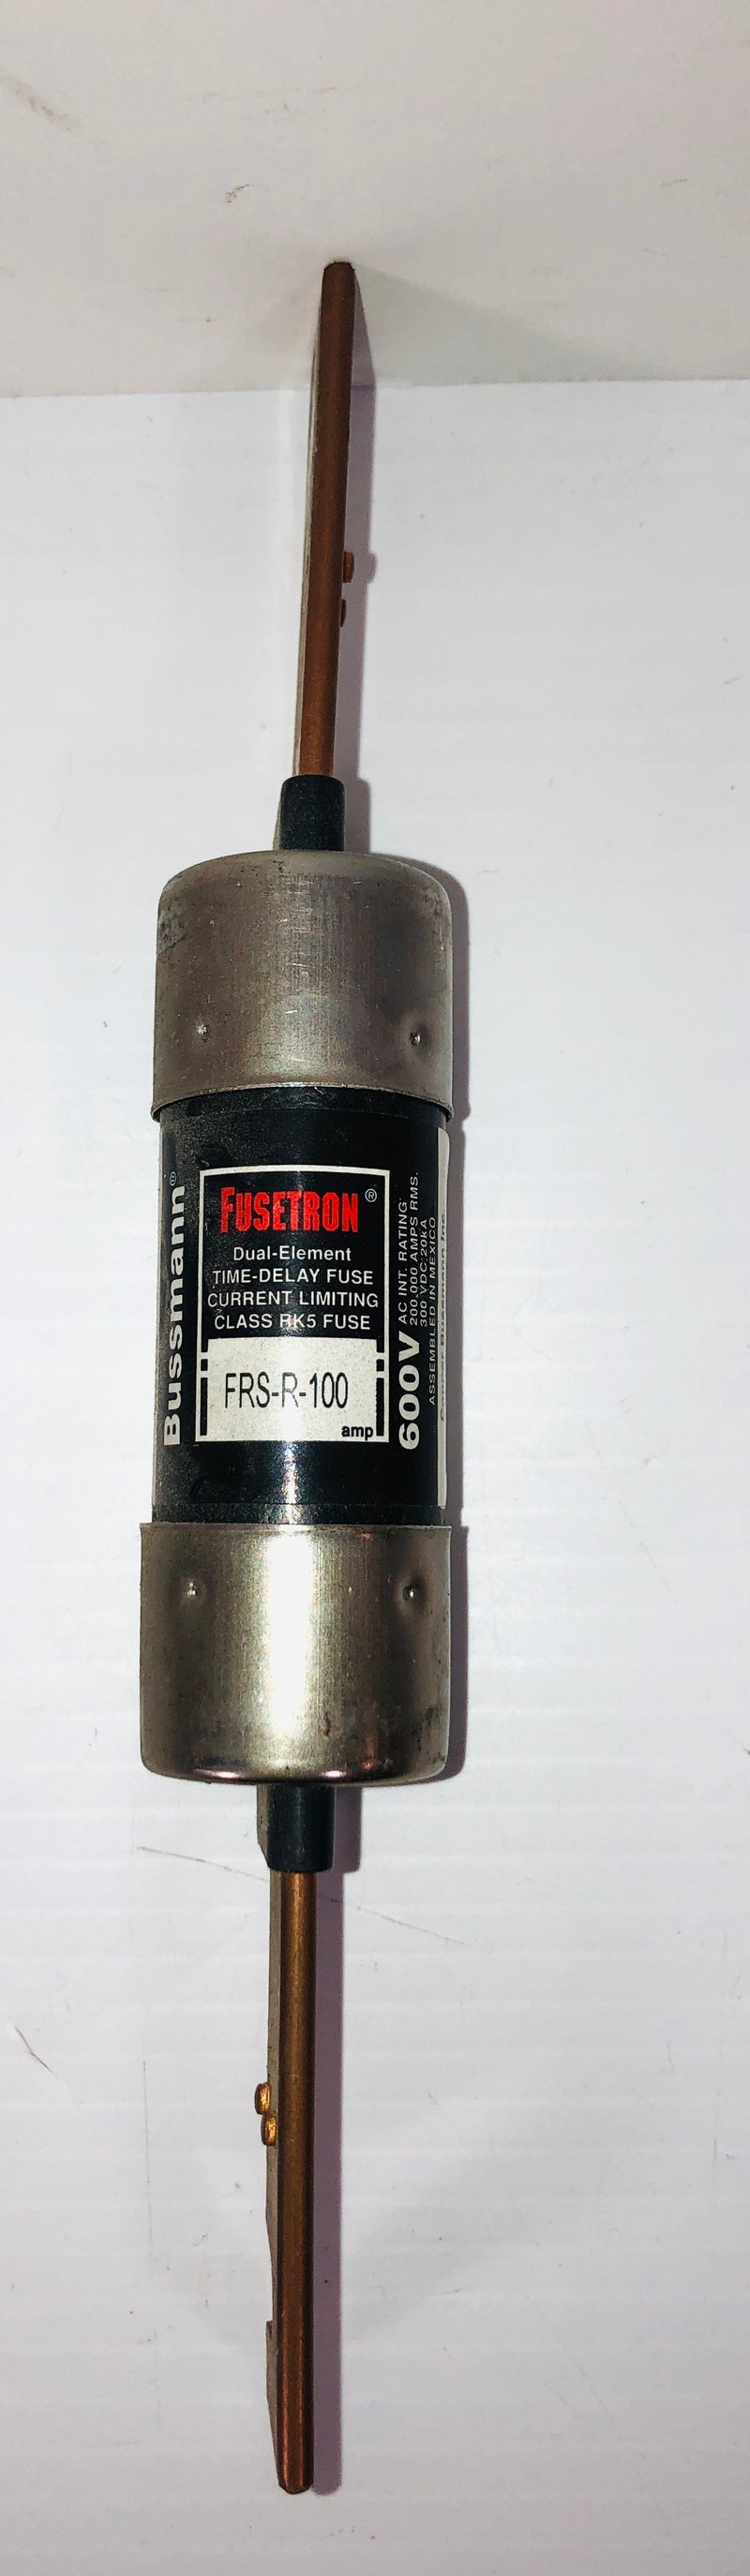 Bussman Fusetron FRS-R-100 Fuse 600V